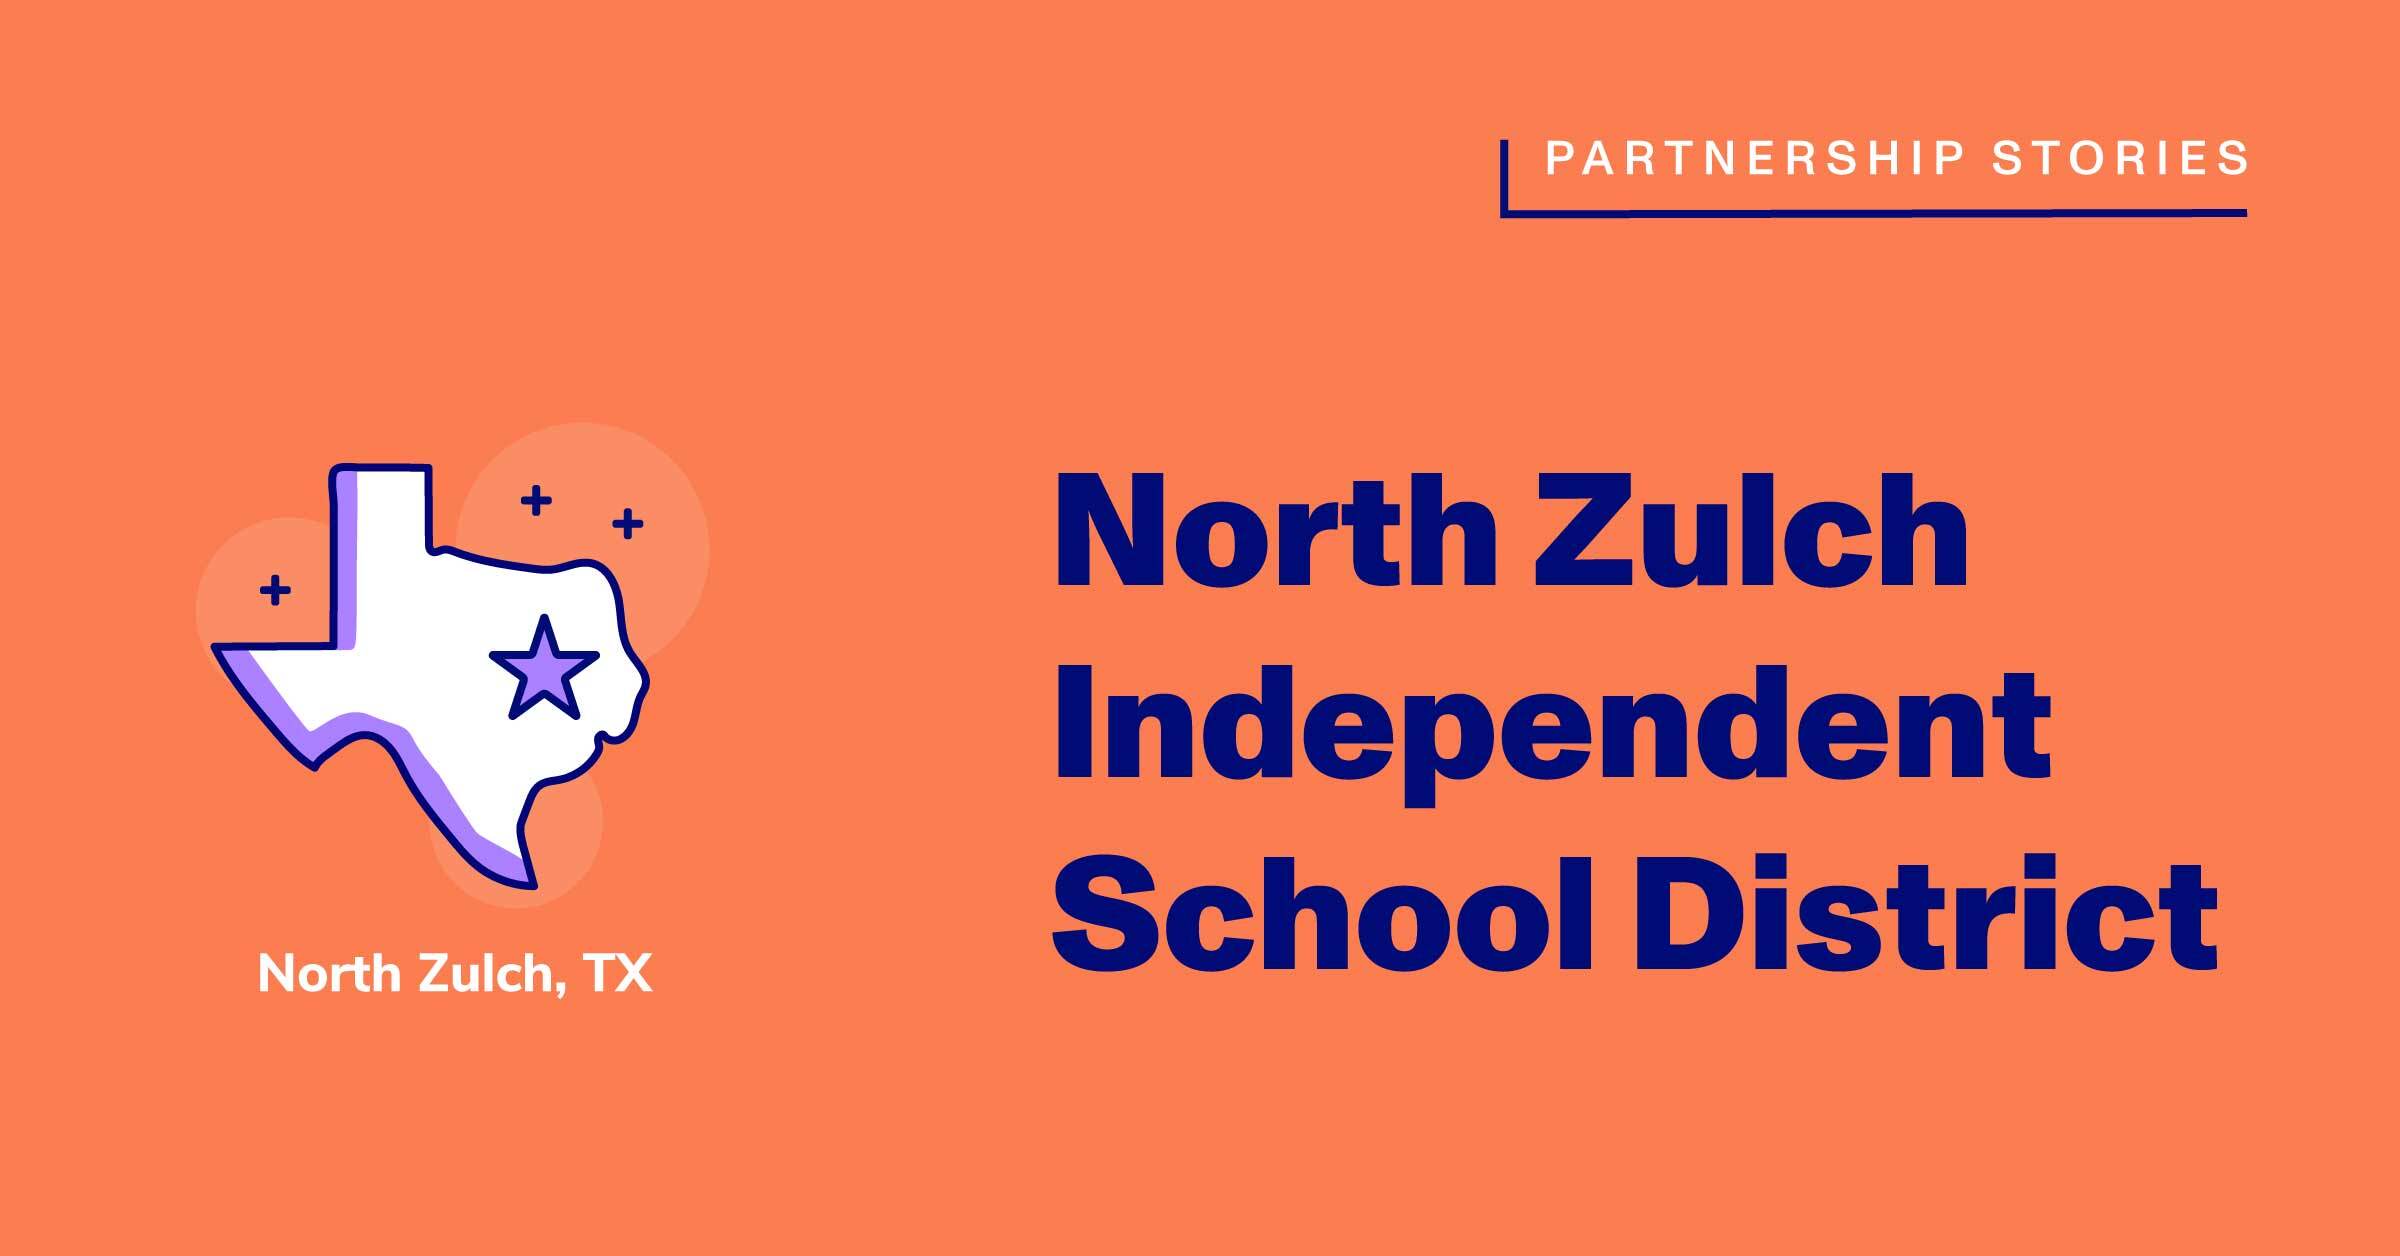 North Zulch Independent School District